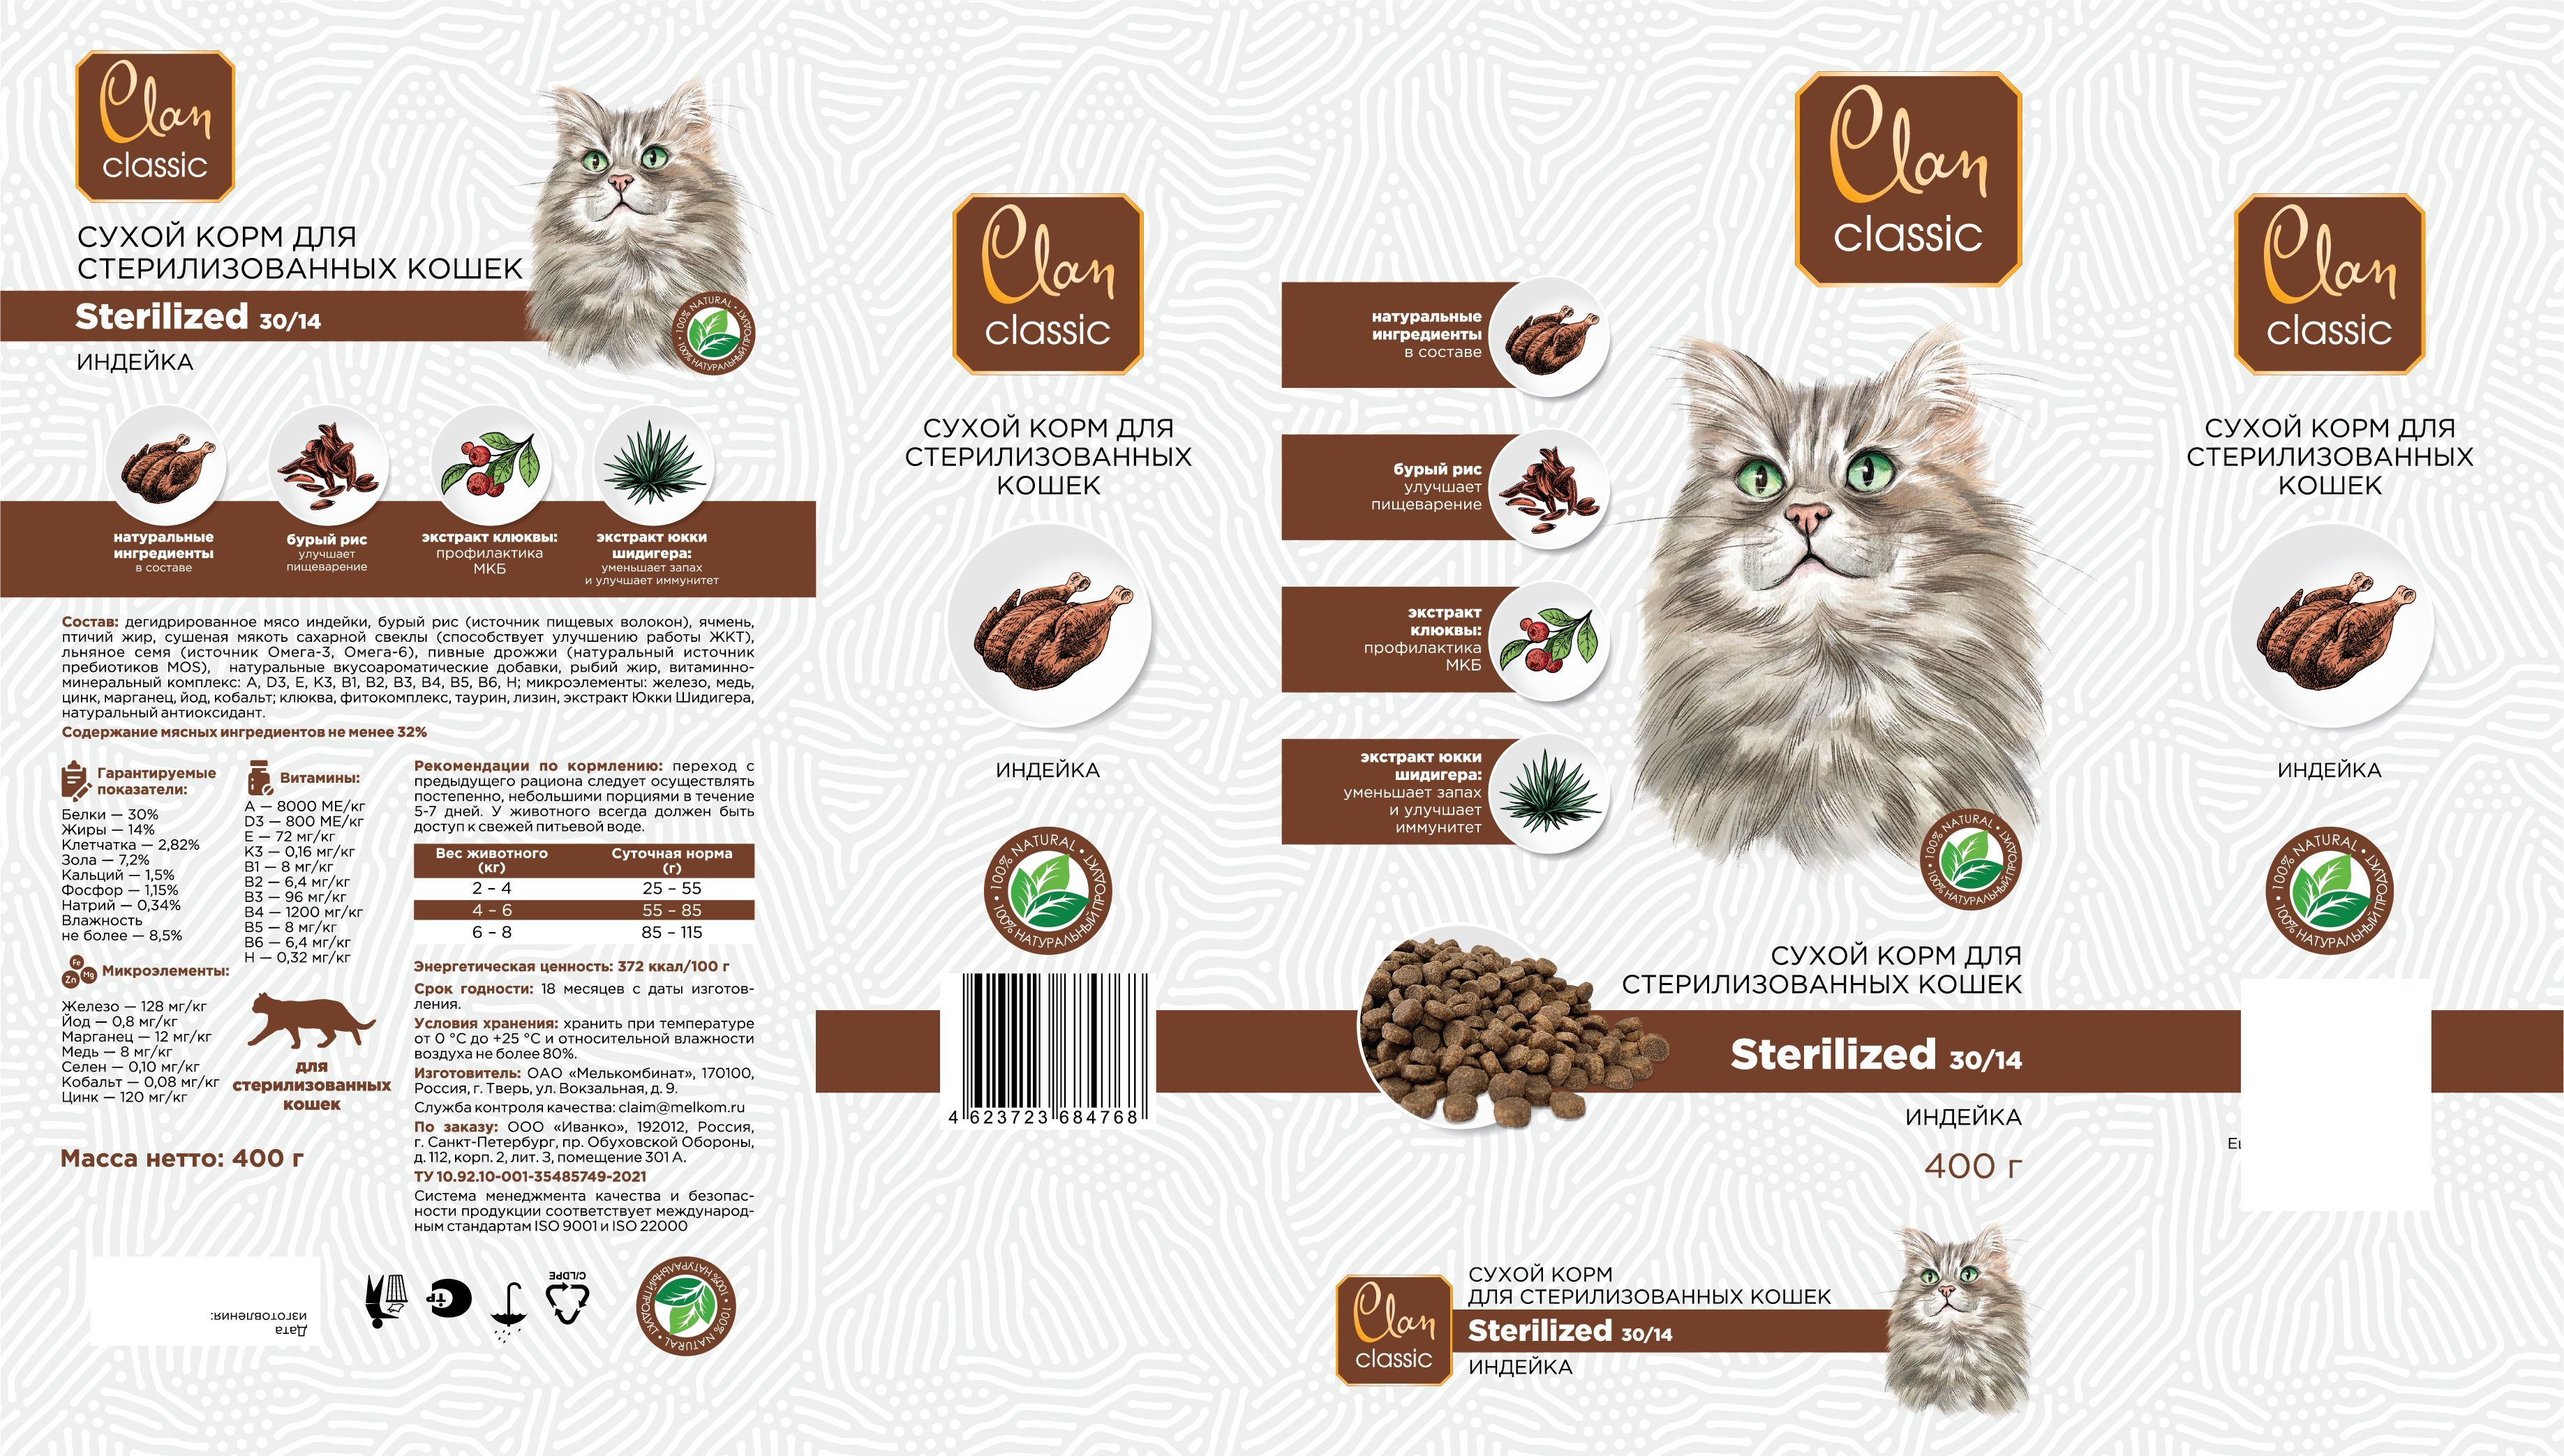 Корм clan отзывы. Корм Clan Classic. Корм Clan Classic Sterilized 30/14 для стерилизованных кошек, с индейкой. Clan Classic Sterilized-30/14 корм для стерилизованных кошек (индейка ), 400 г. Clan Classic сухой корм для кошек.